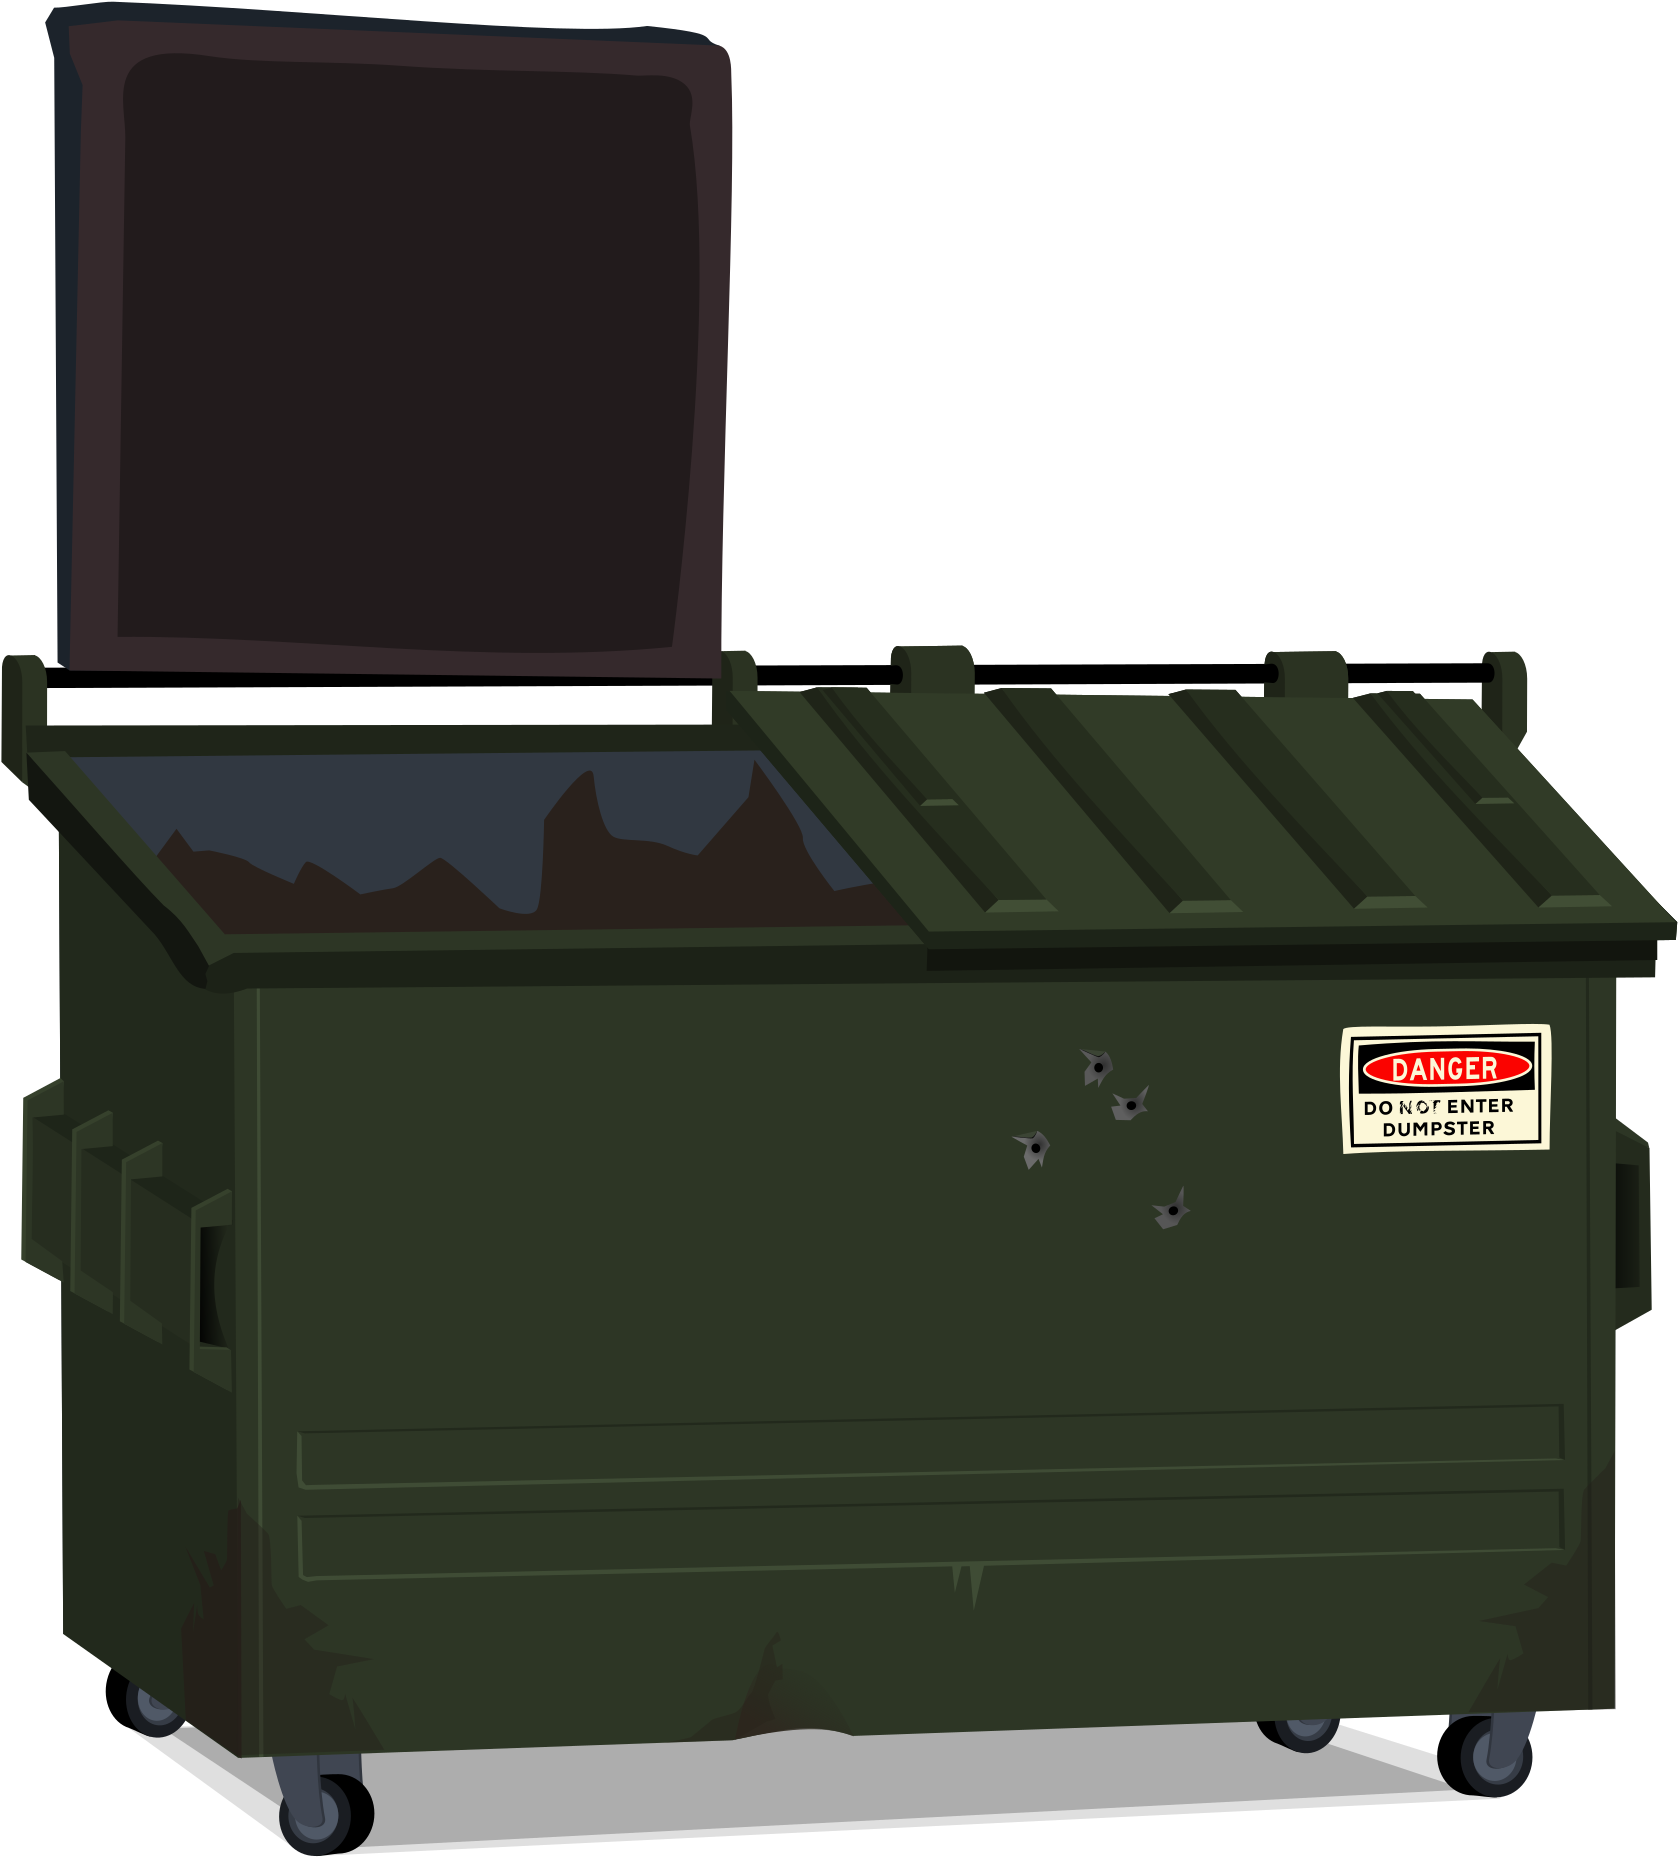 Big Image - Dumpster Image Clip Art (2400x2400)